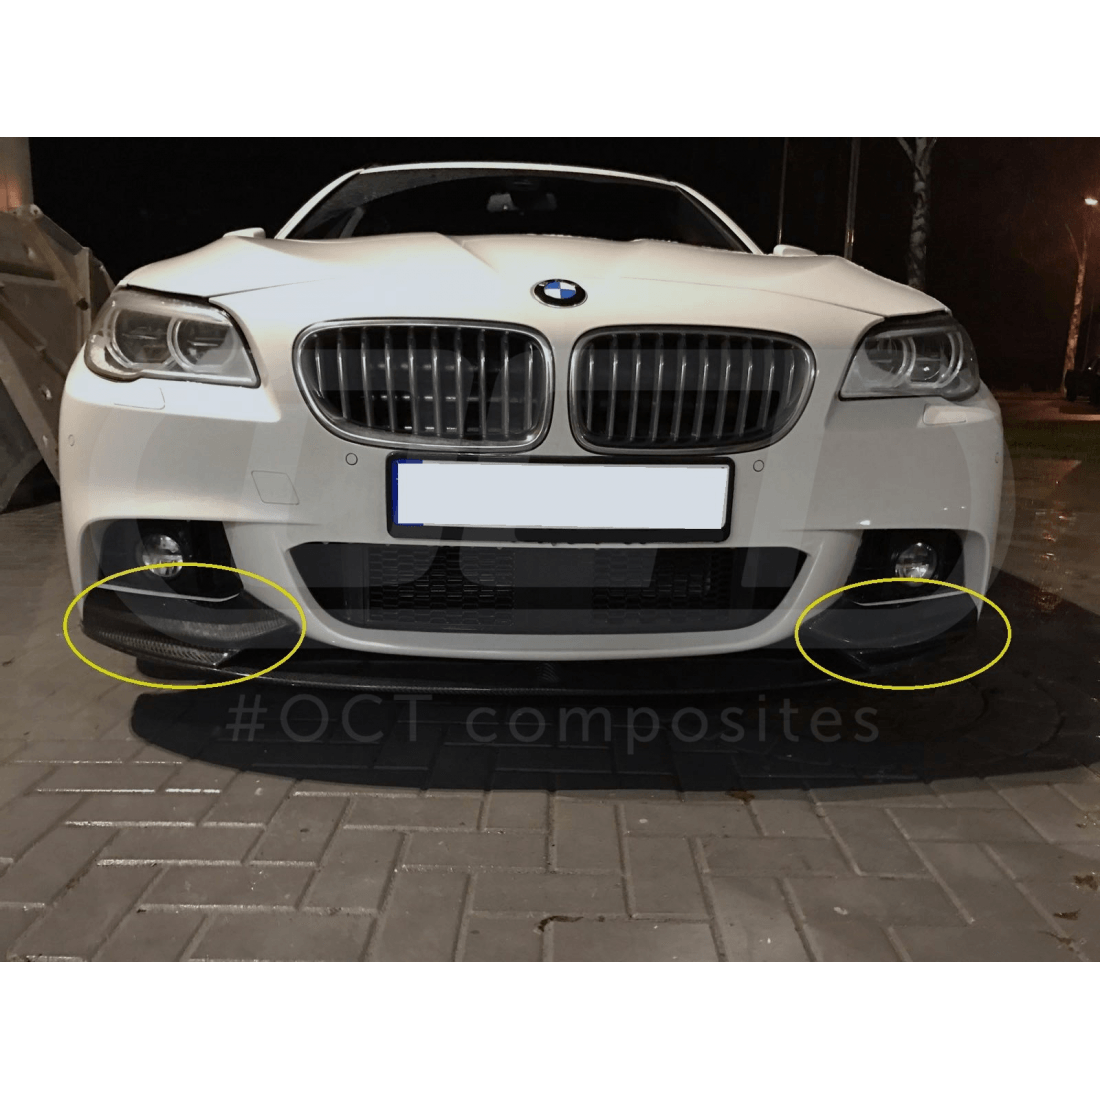 Oct Composite Carbon Flaps für BMW F10/F11